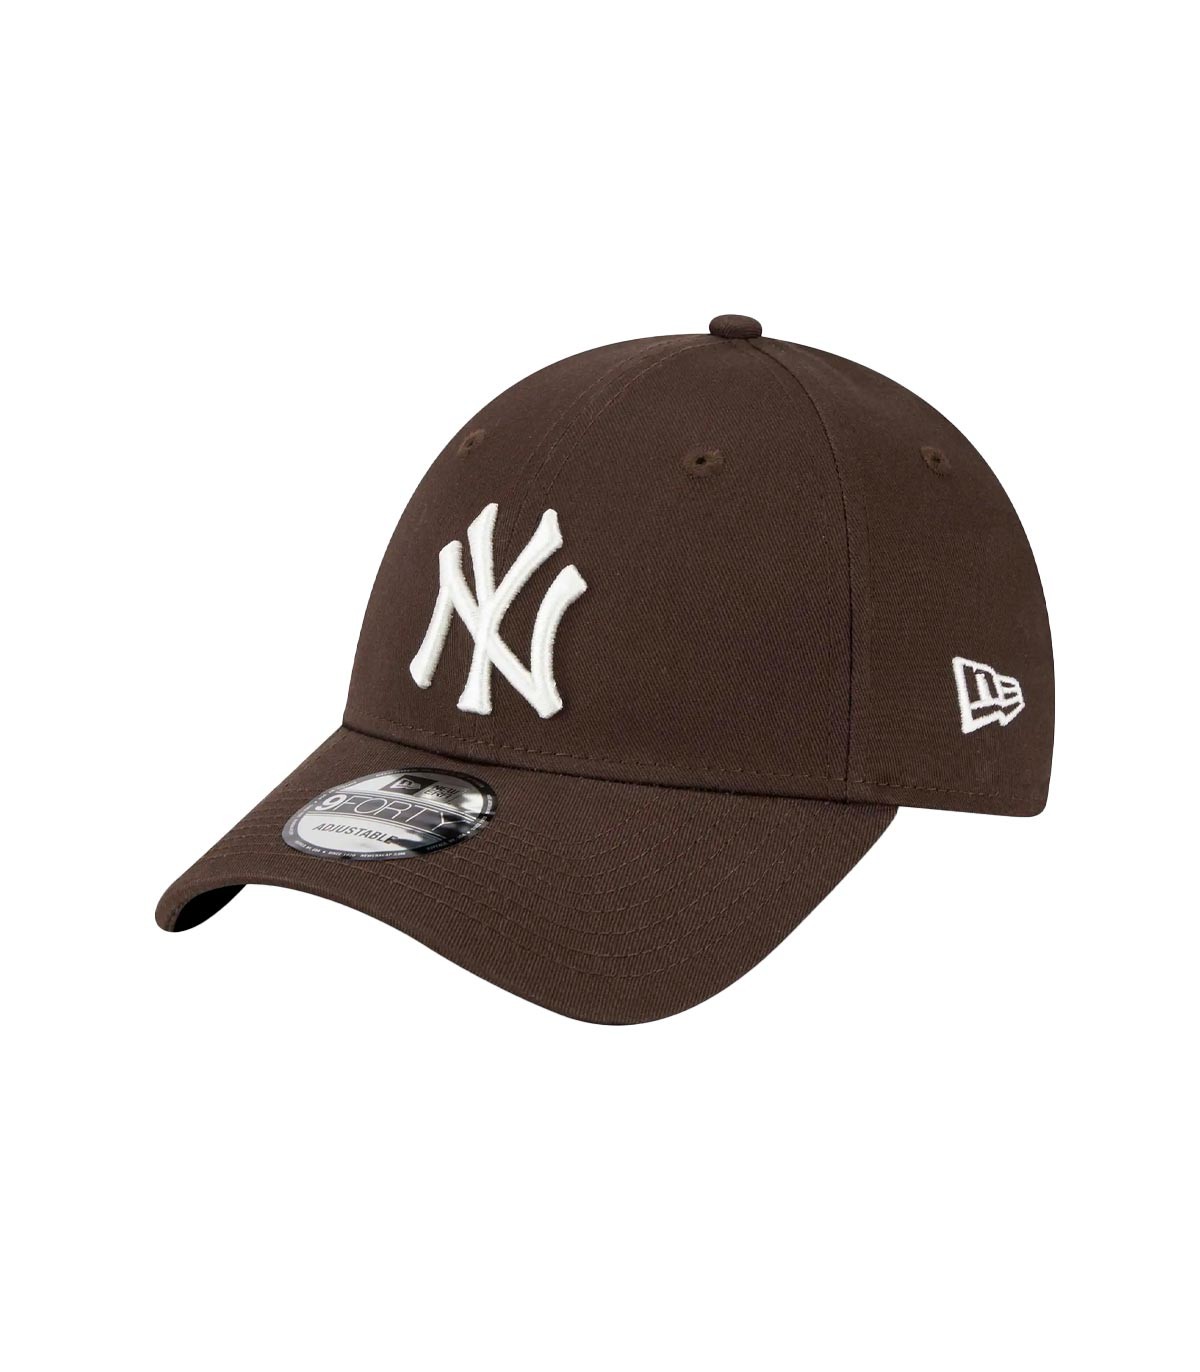 New Era - Gorra New York Yankees - Marrón